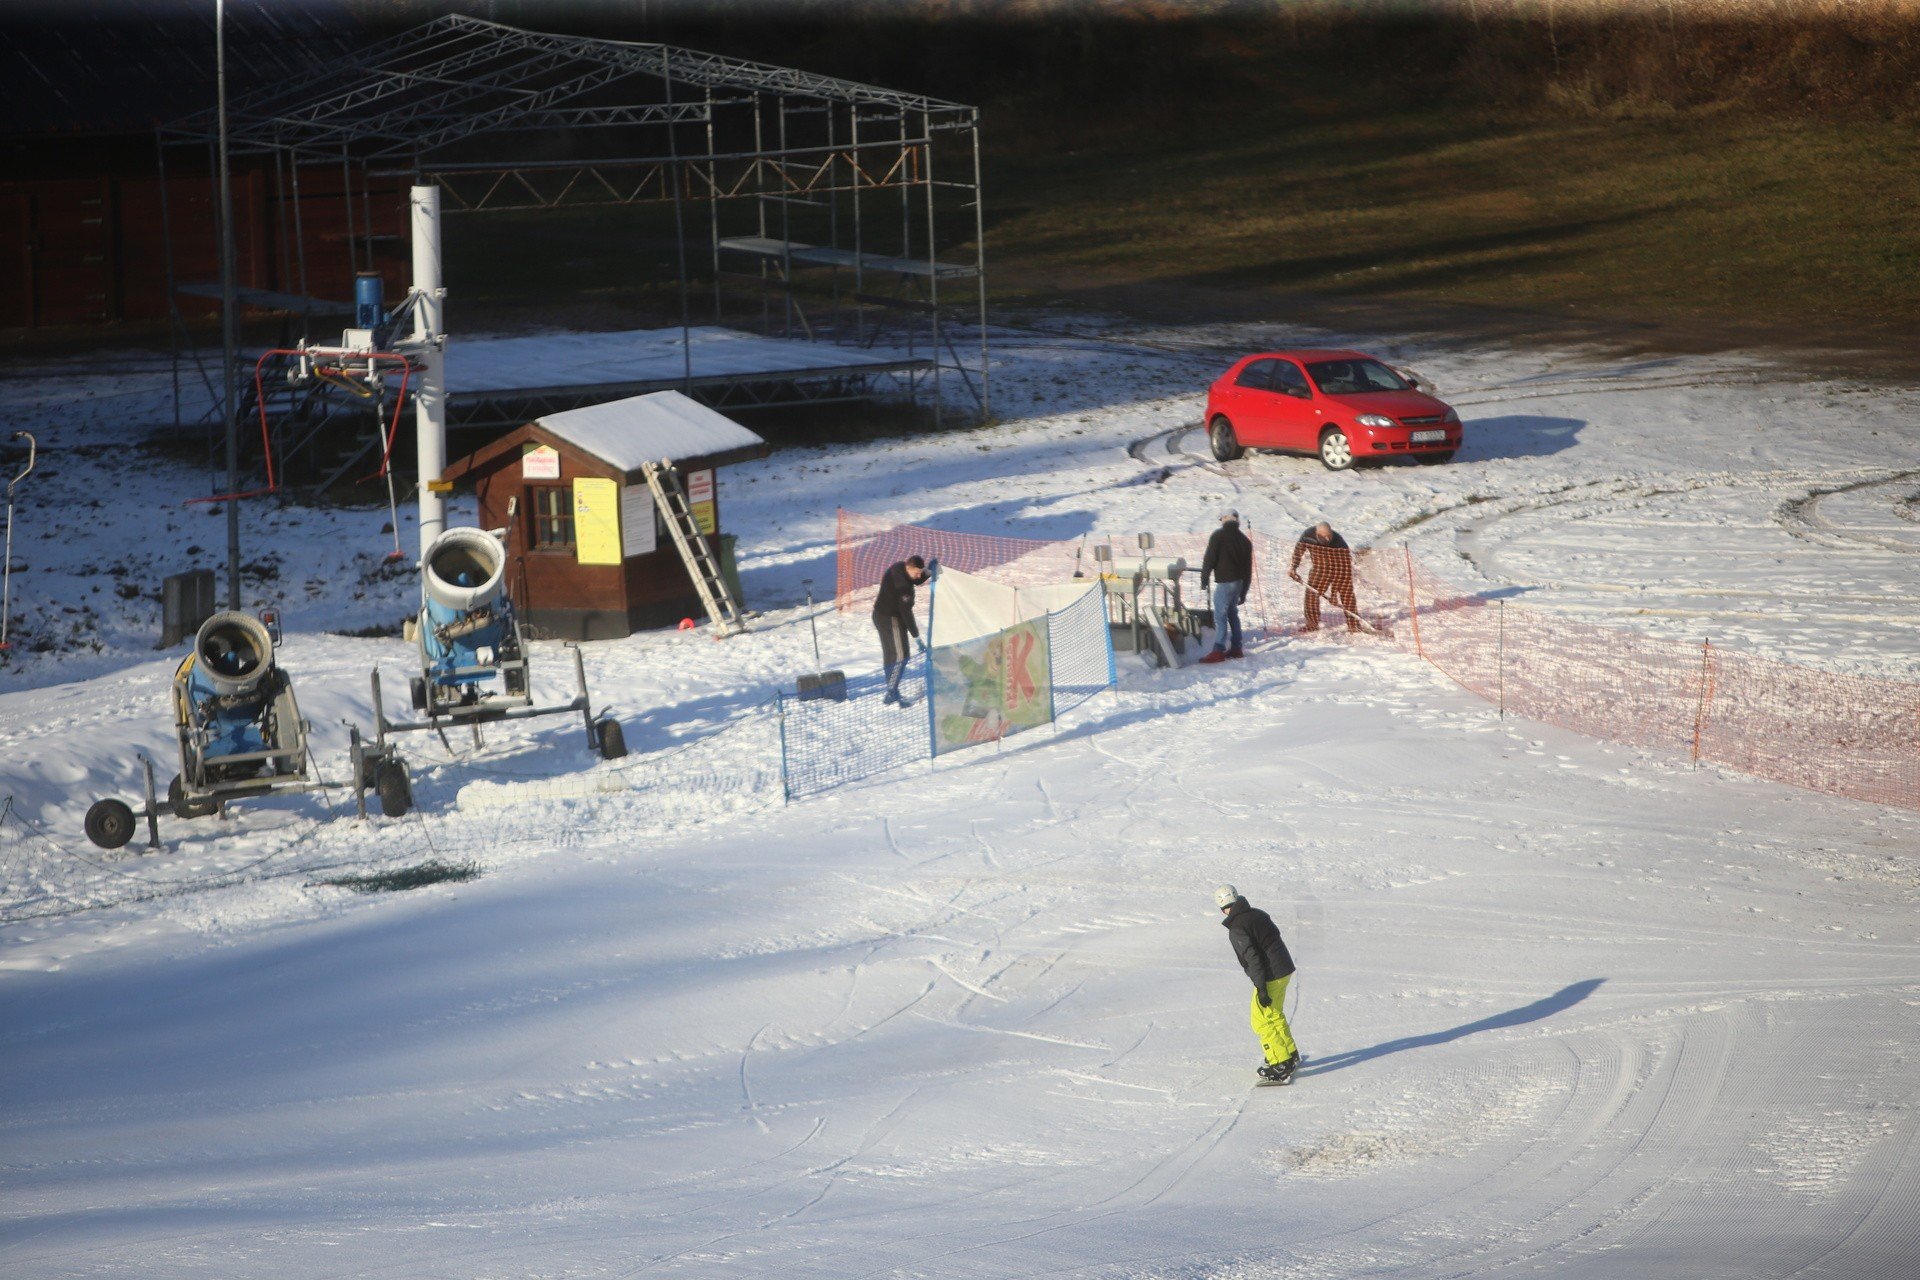 Stok narciarski w Bytomiu otwarty. Sport Dolina zaprasza na narty,  snowboard lub sanki | Dziennik Zachodni